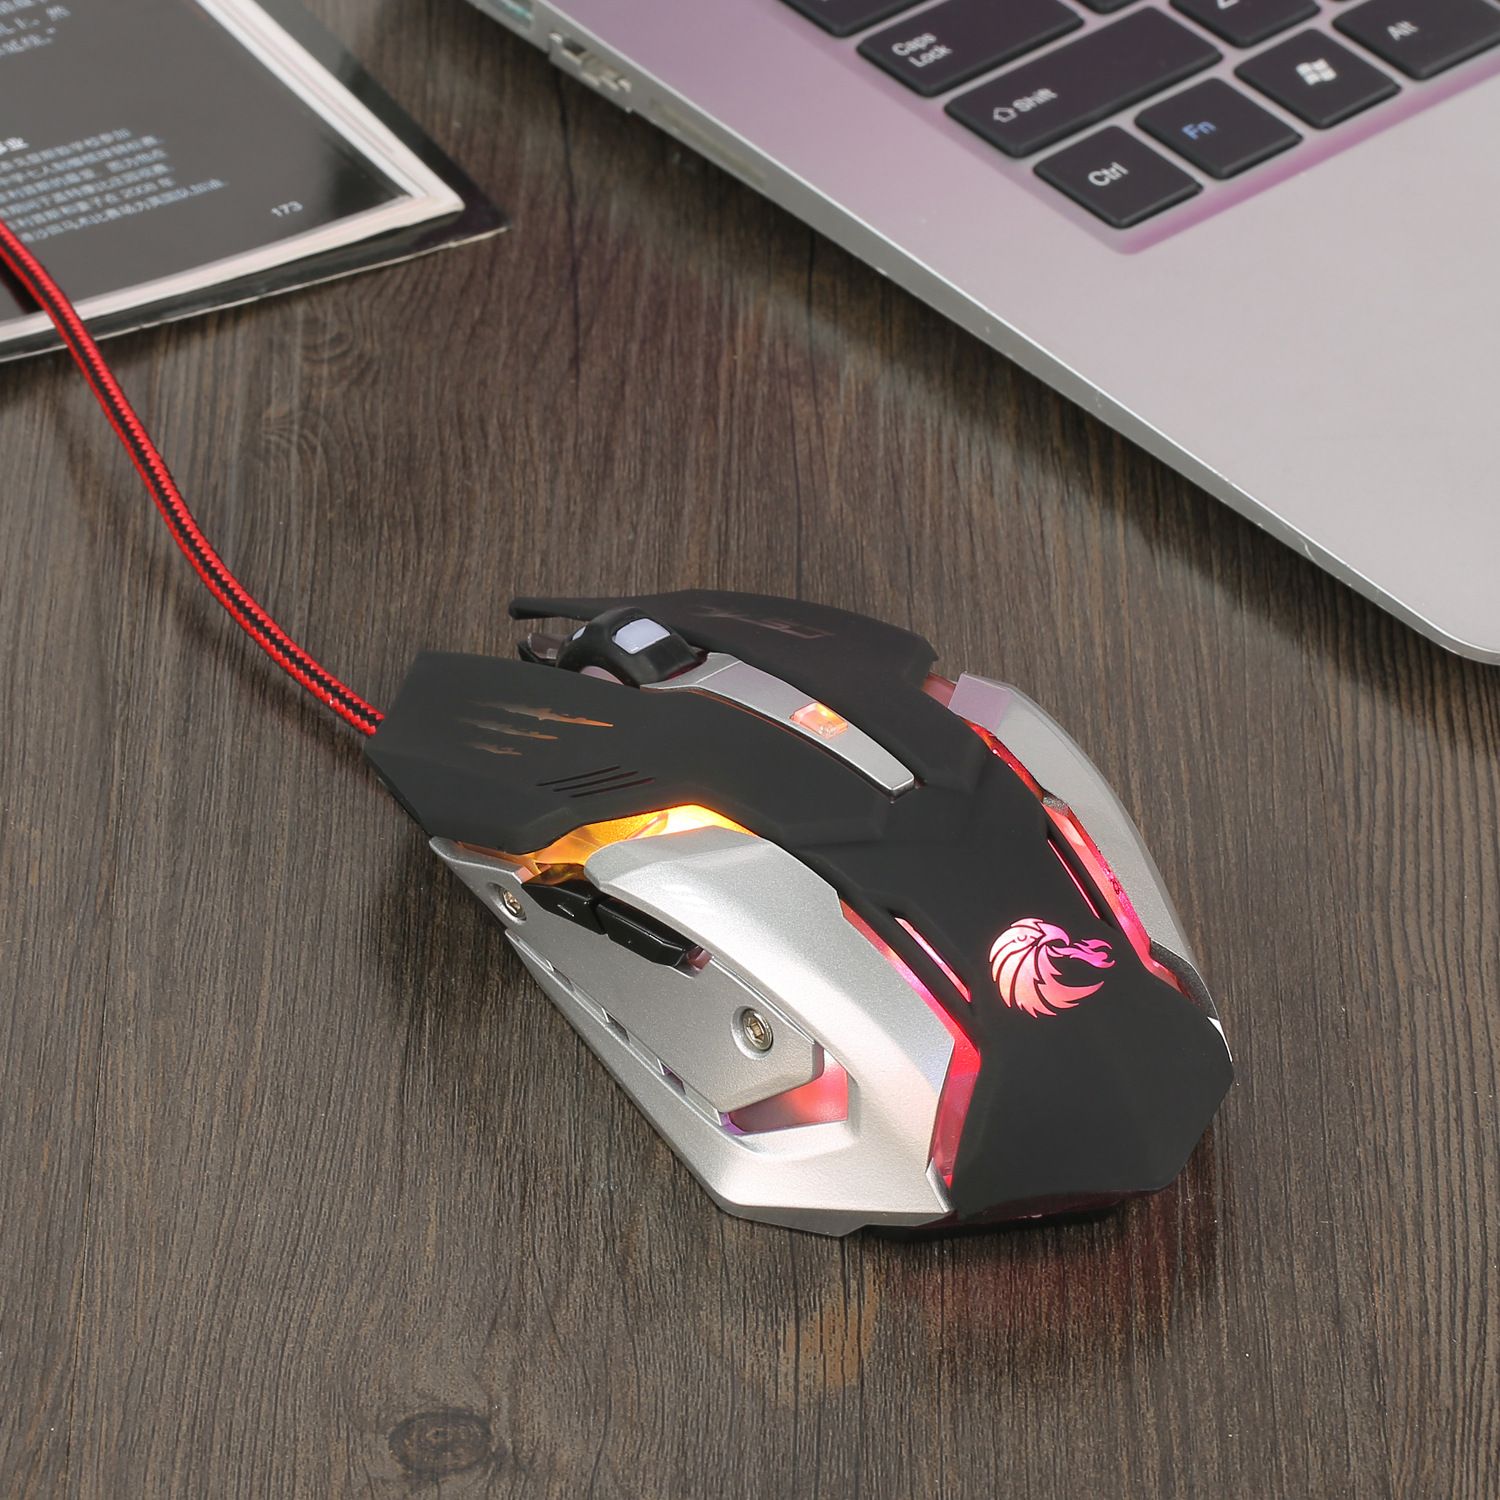 Мышка для компьютера. Мышь проводная Optical Mouse игровая. Мышь Prestigio Optical Racer Mouse Grey-Red USB. Мышка Optical Mouse игровая c5. Мышь Optical Mouse подсветка USB.